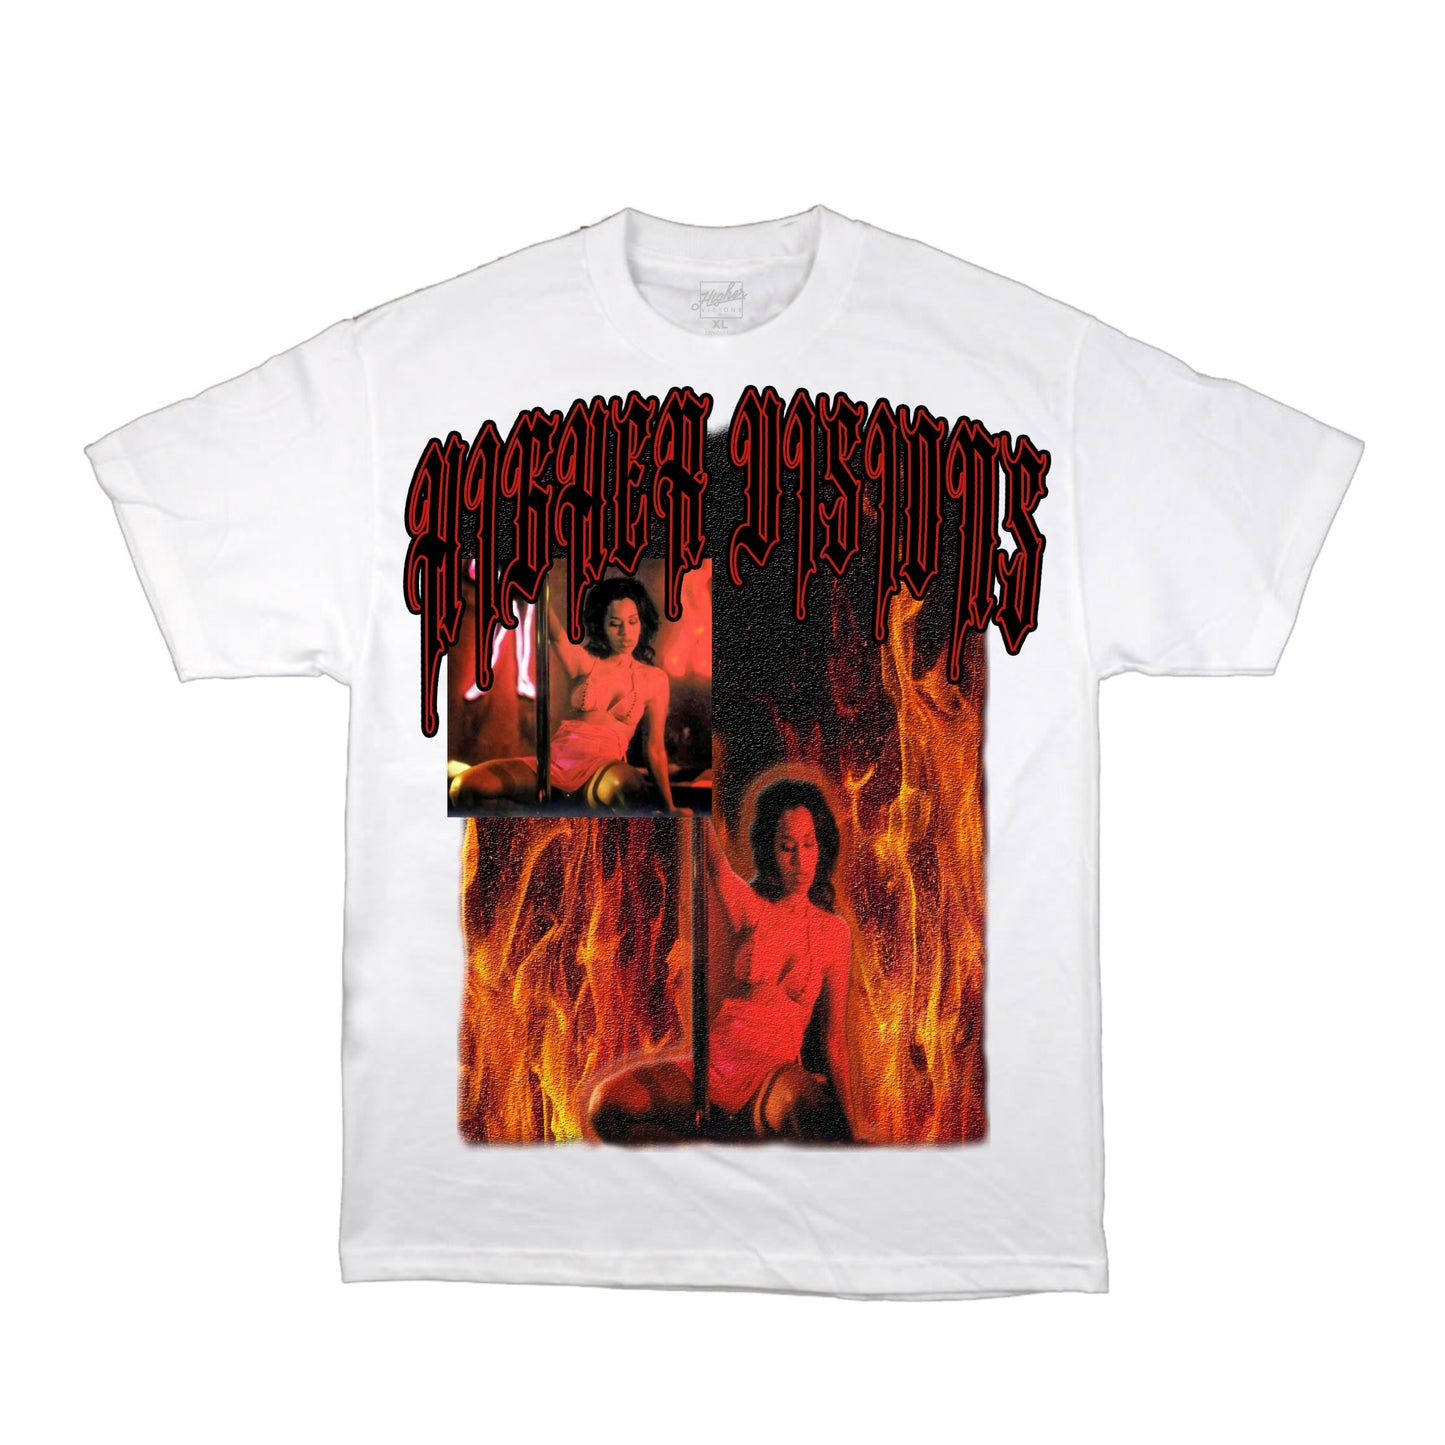 Love on FIRE T-Shirt